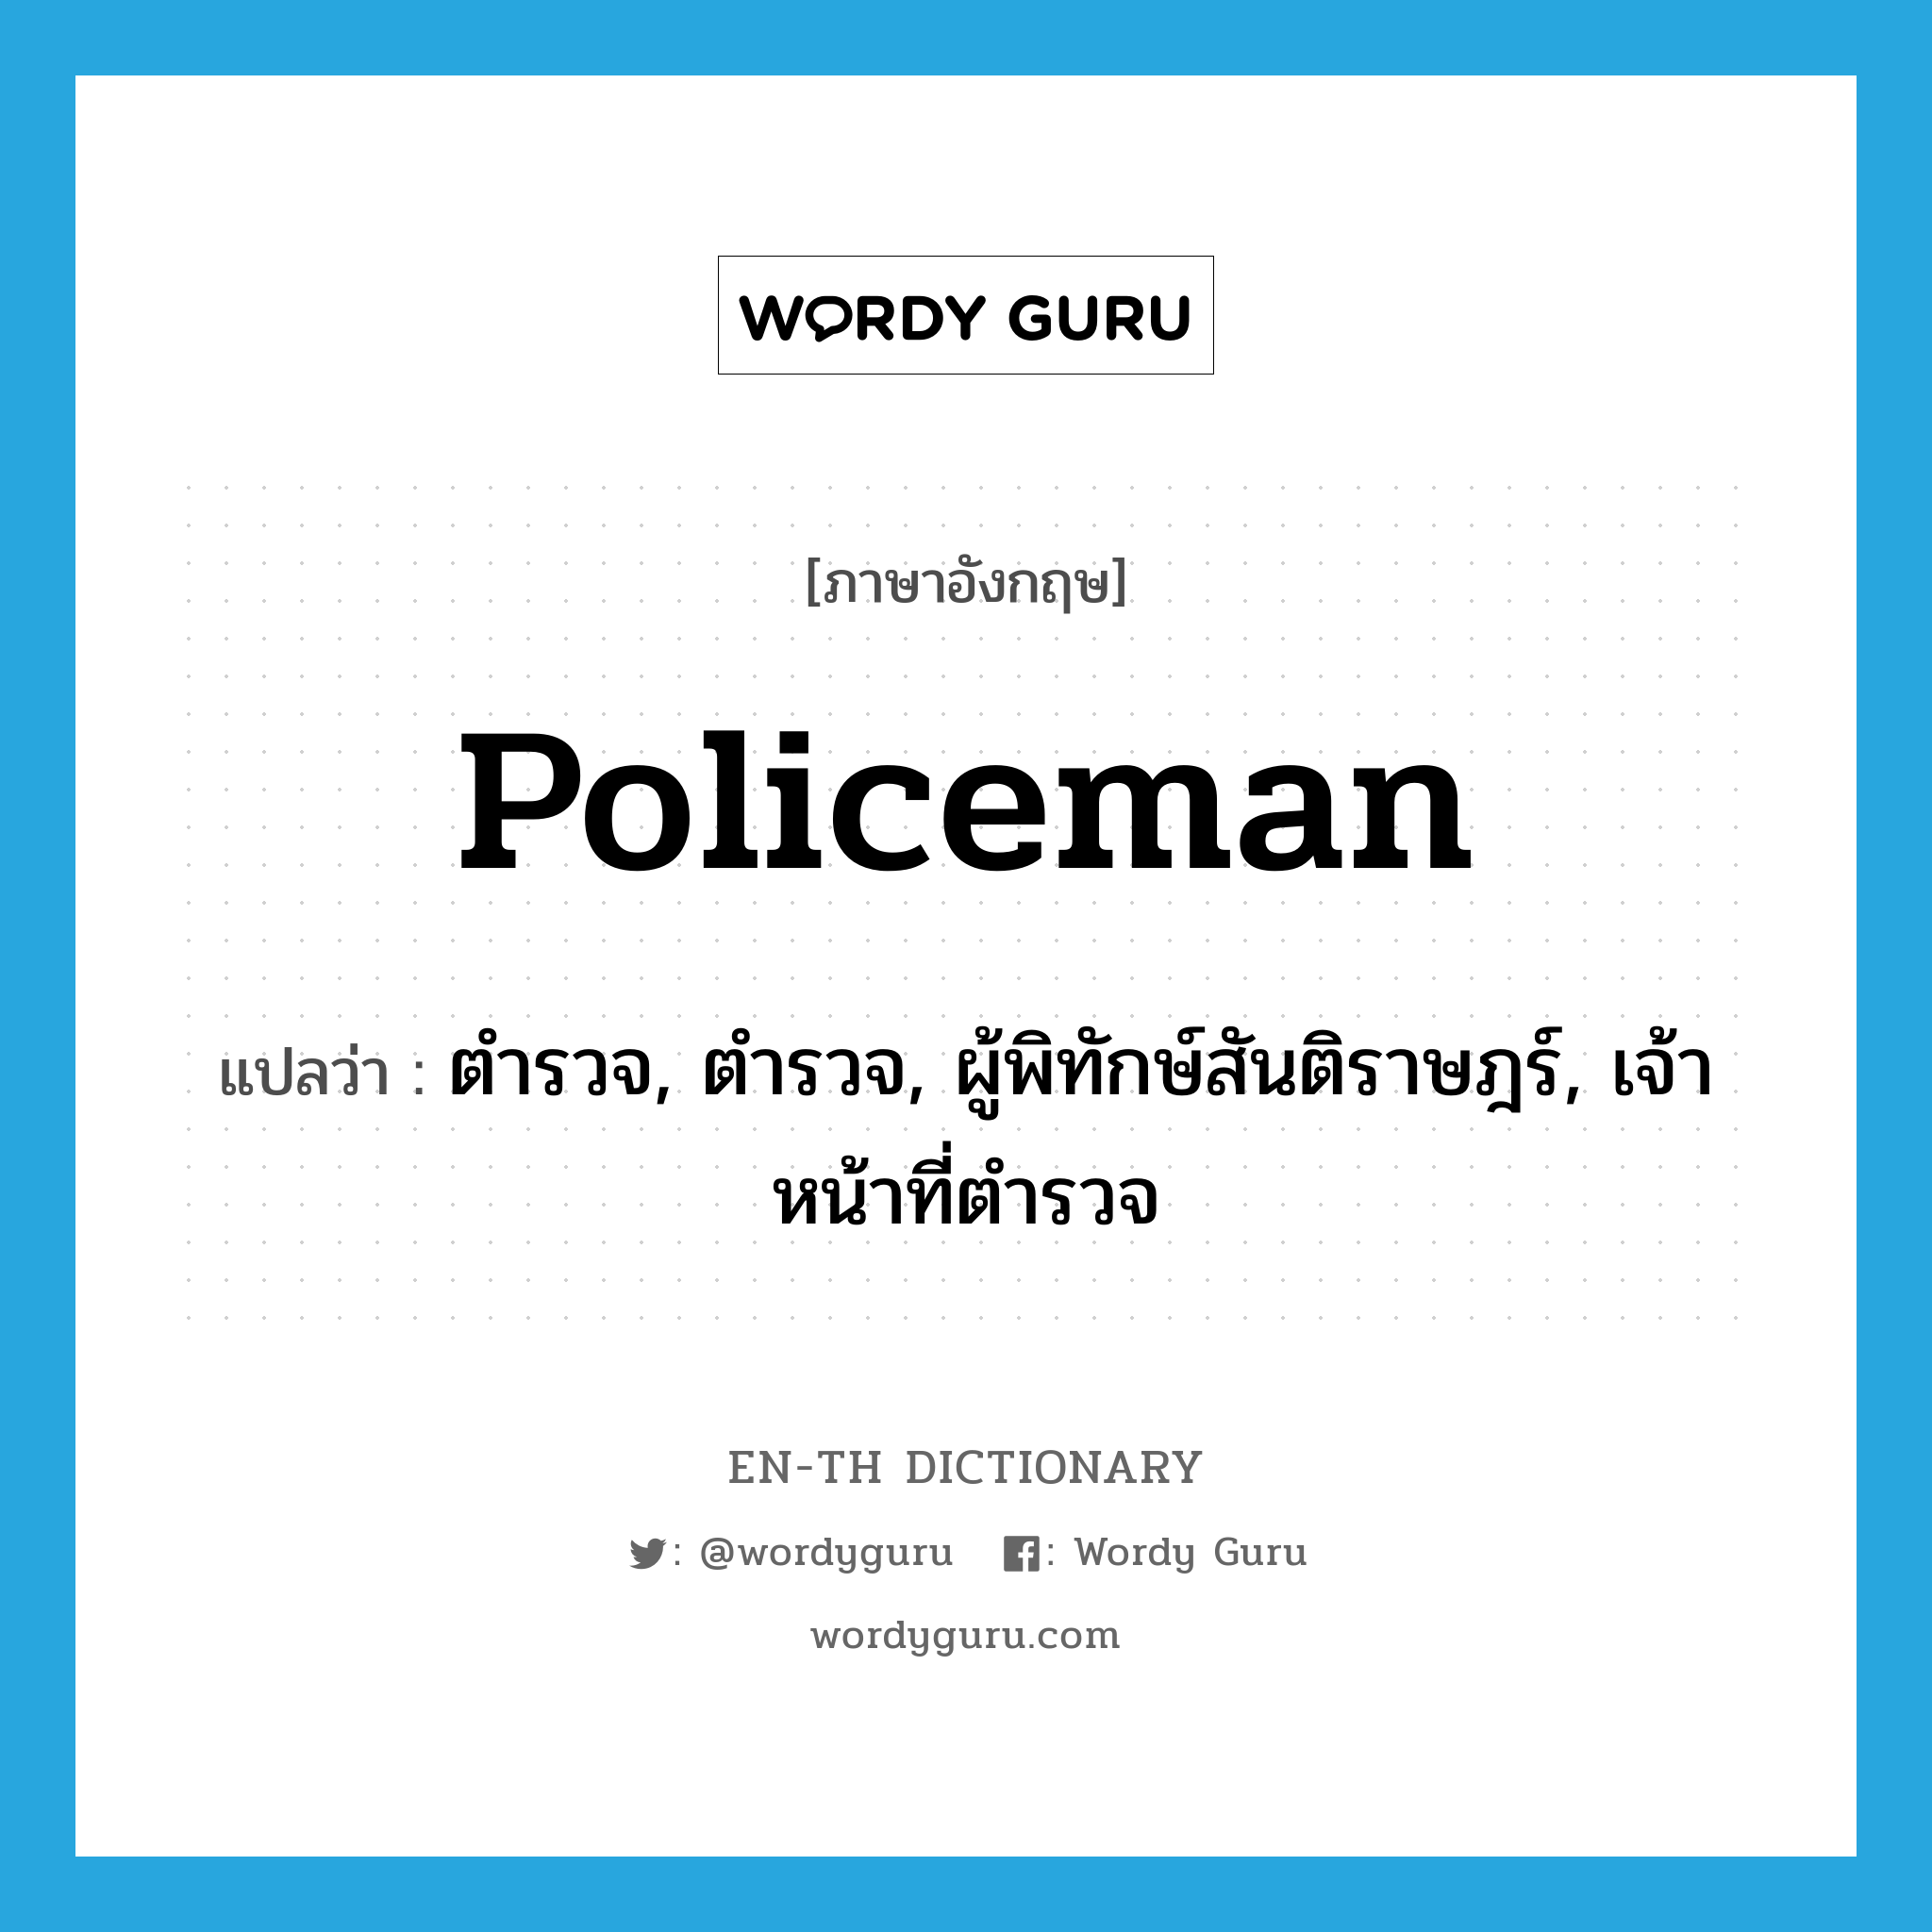 ตำรวจ, ตำรวจ, ผู้พิทักษ์สันติราษฎร์, เจ้าหน้าที่ตำรวจ ภาษาอังกฤษ?, คำศัพท์ภาษาอังกฤษ ตำรวจ, ตำรวจ, ผู้พิทักษ์สันติราษฎร์, เจ้าหน้าที่ตำรวจ แปลว่า policeman ประเภท N หมวด N